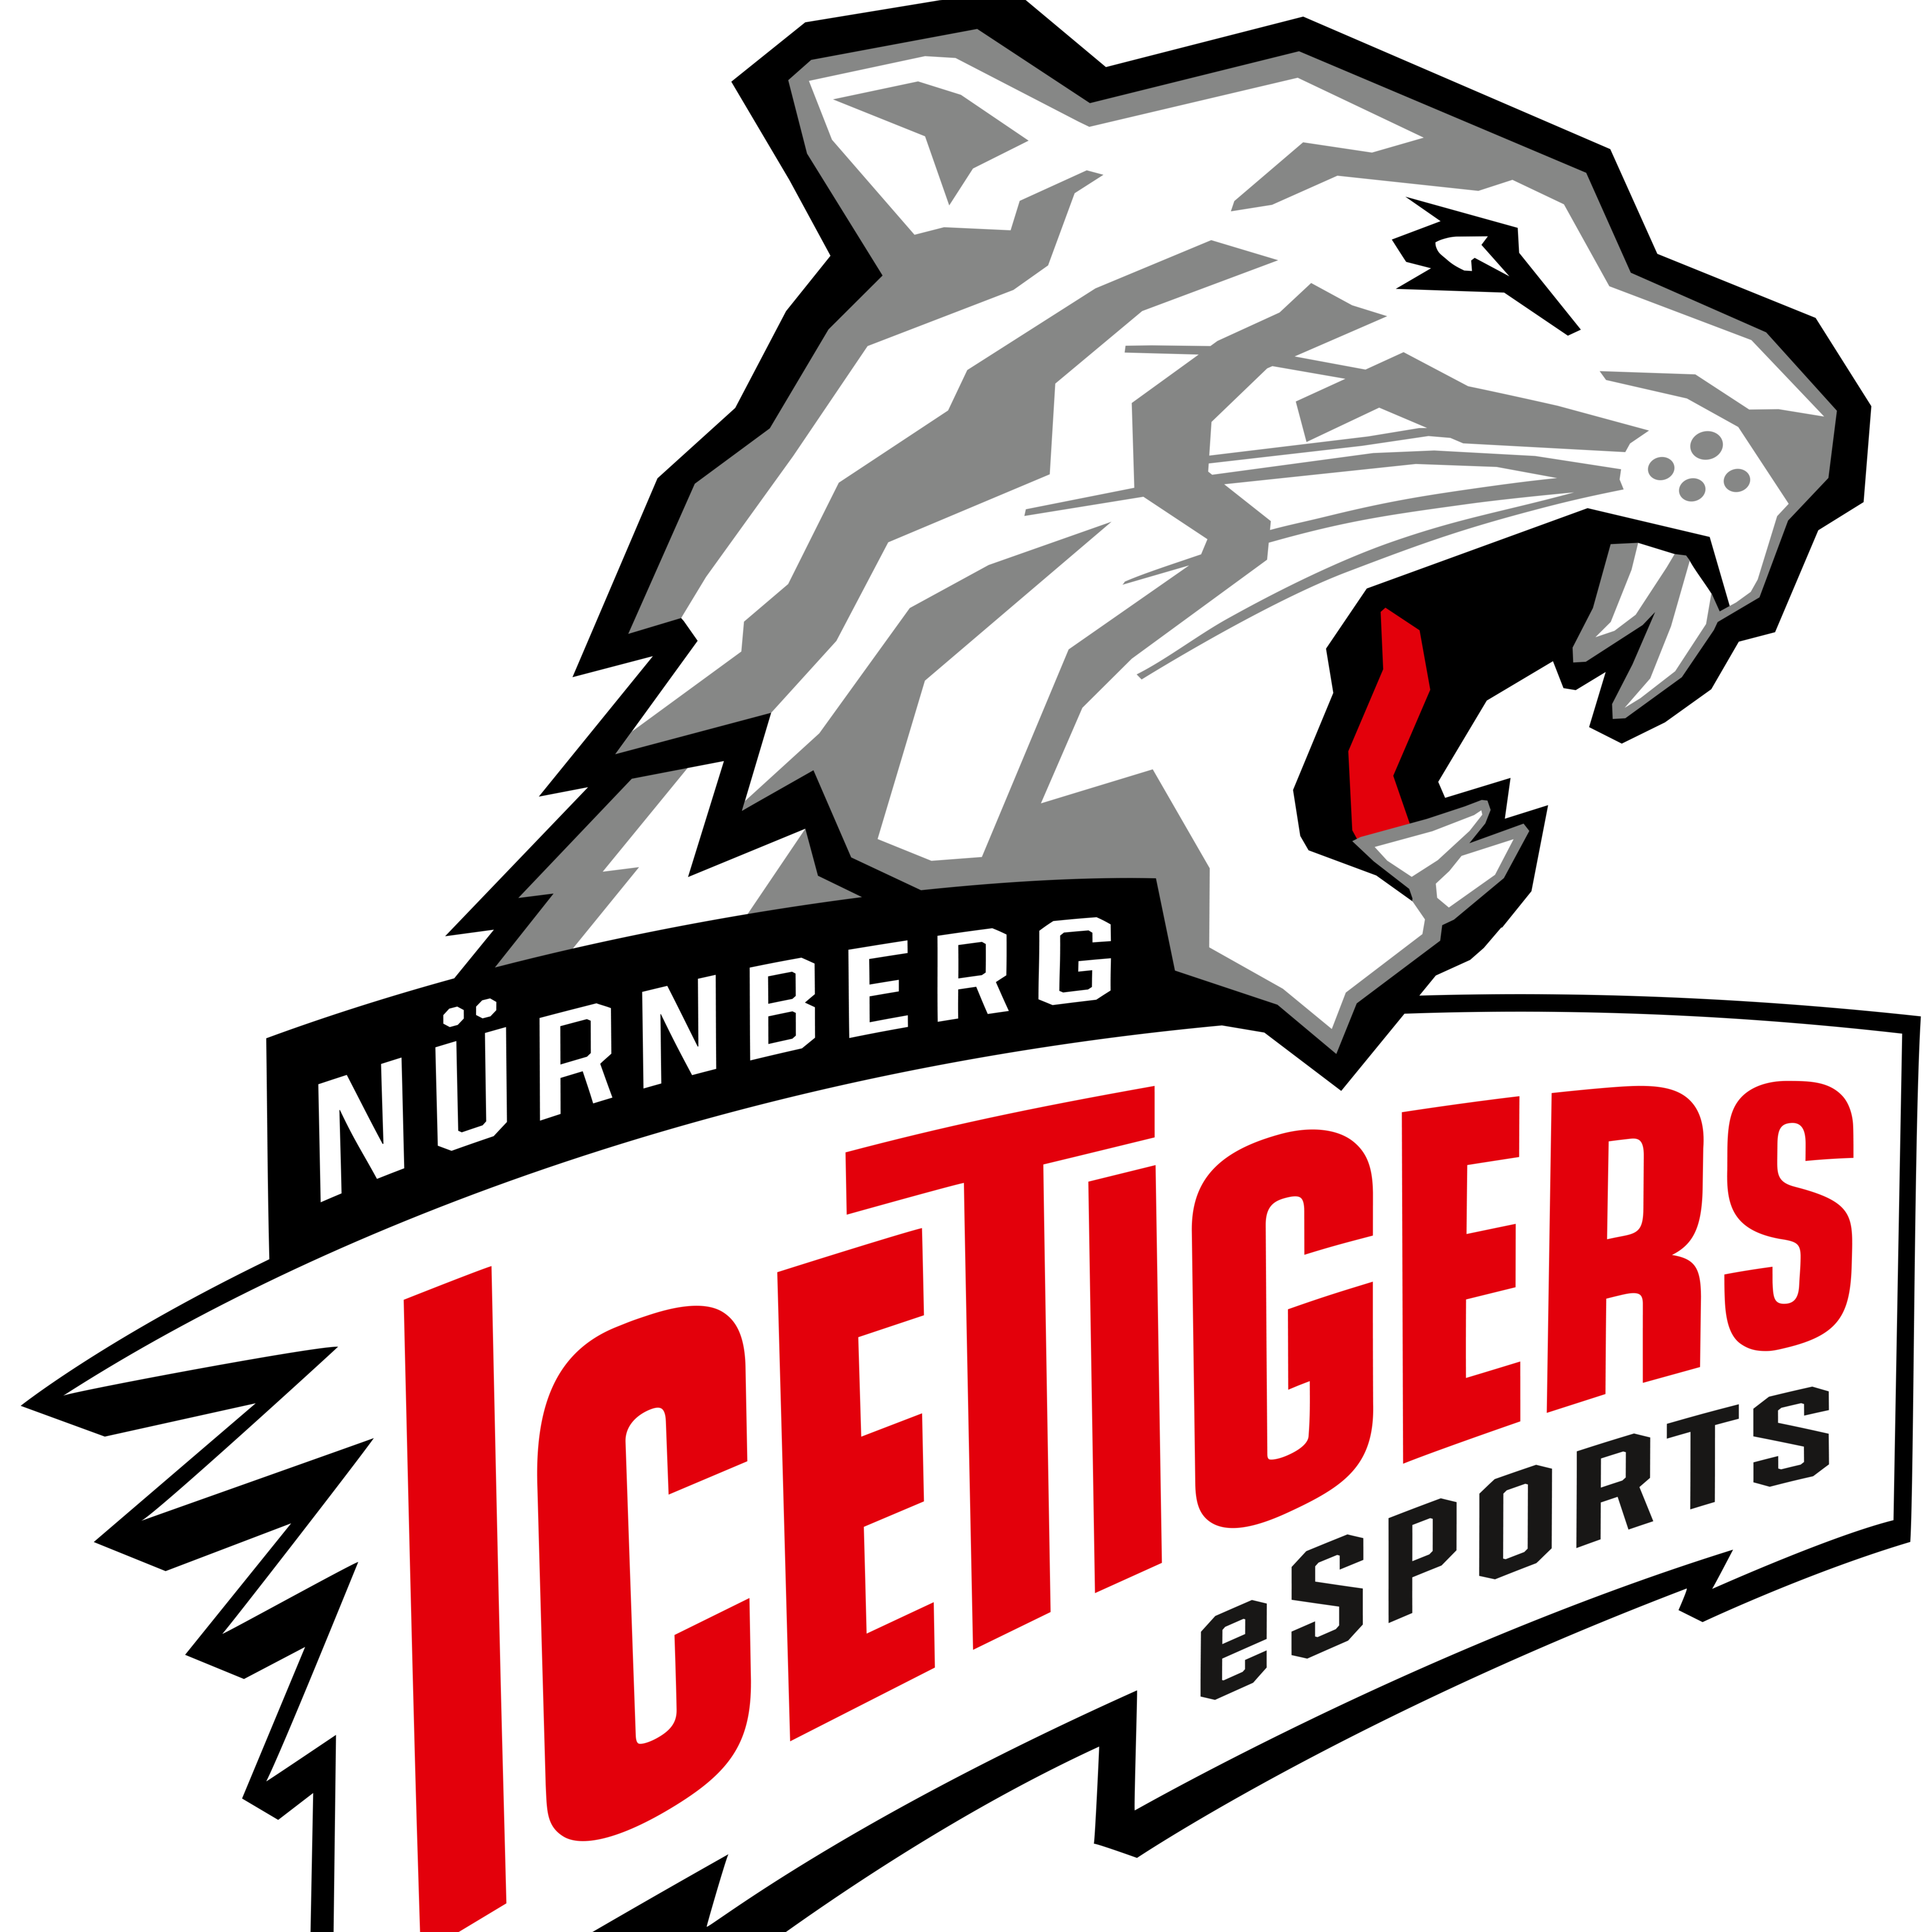 Nurnberg IceTigers eSport